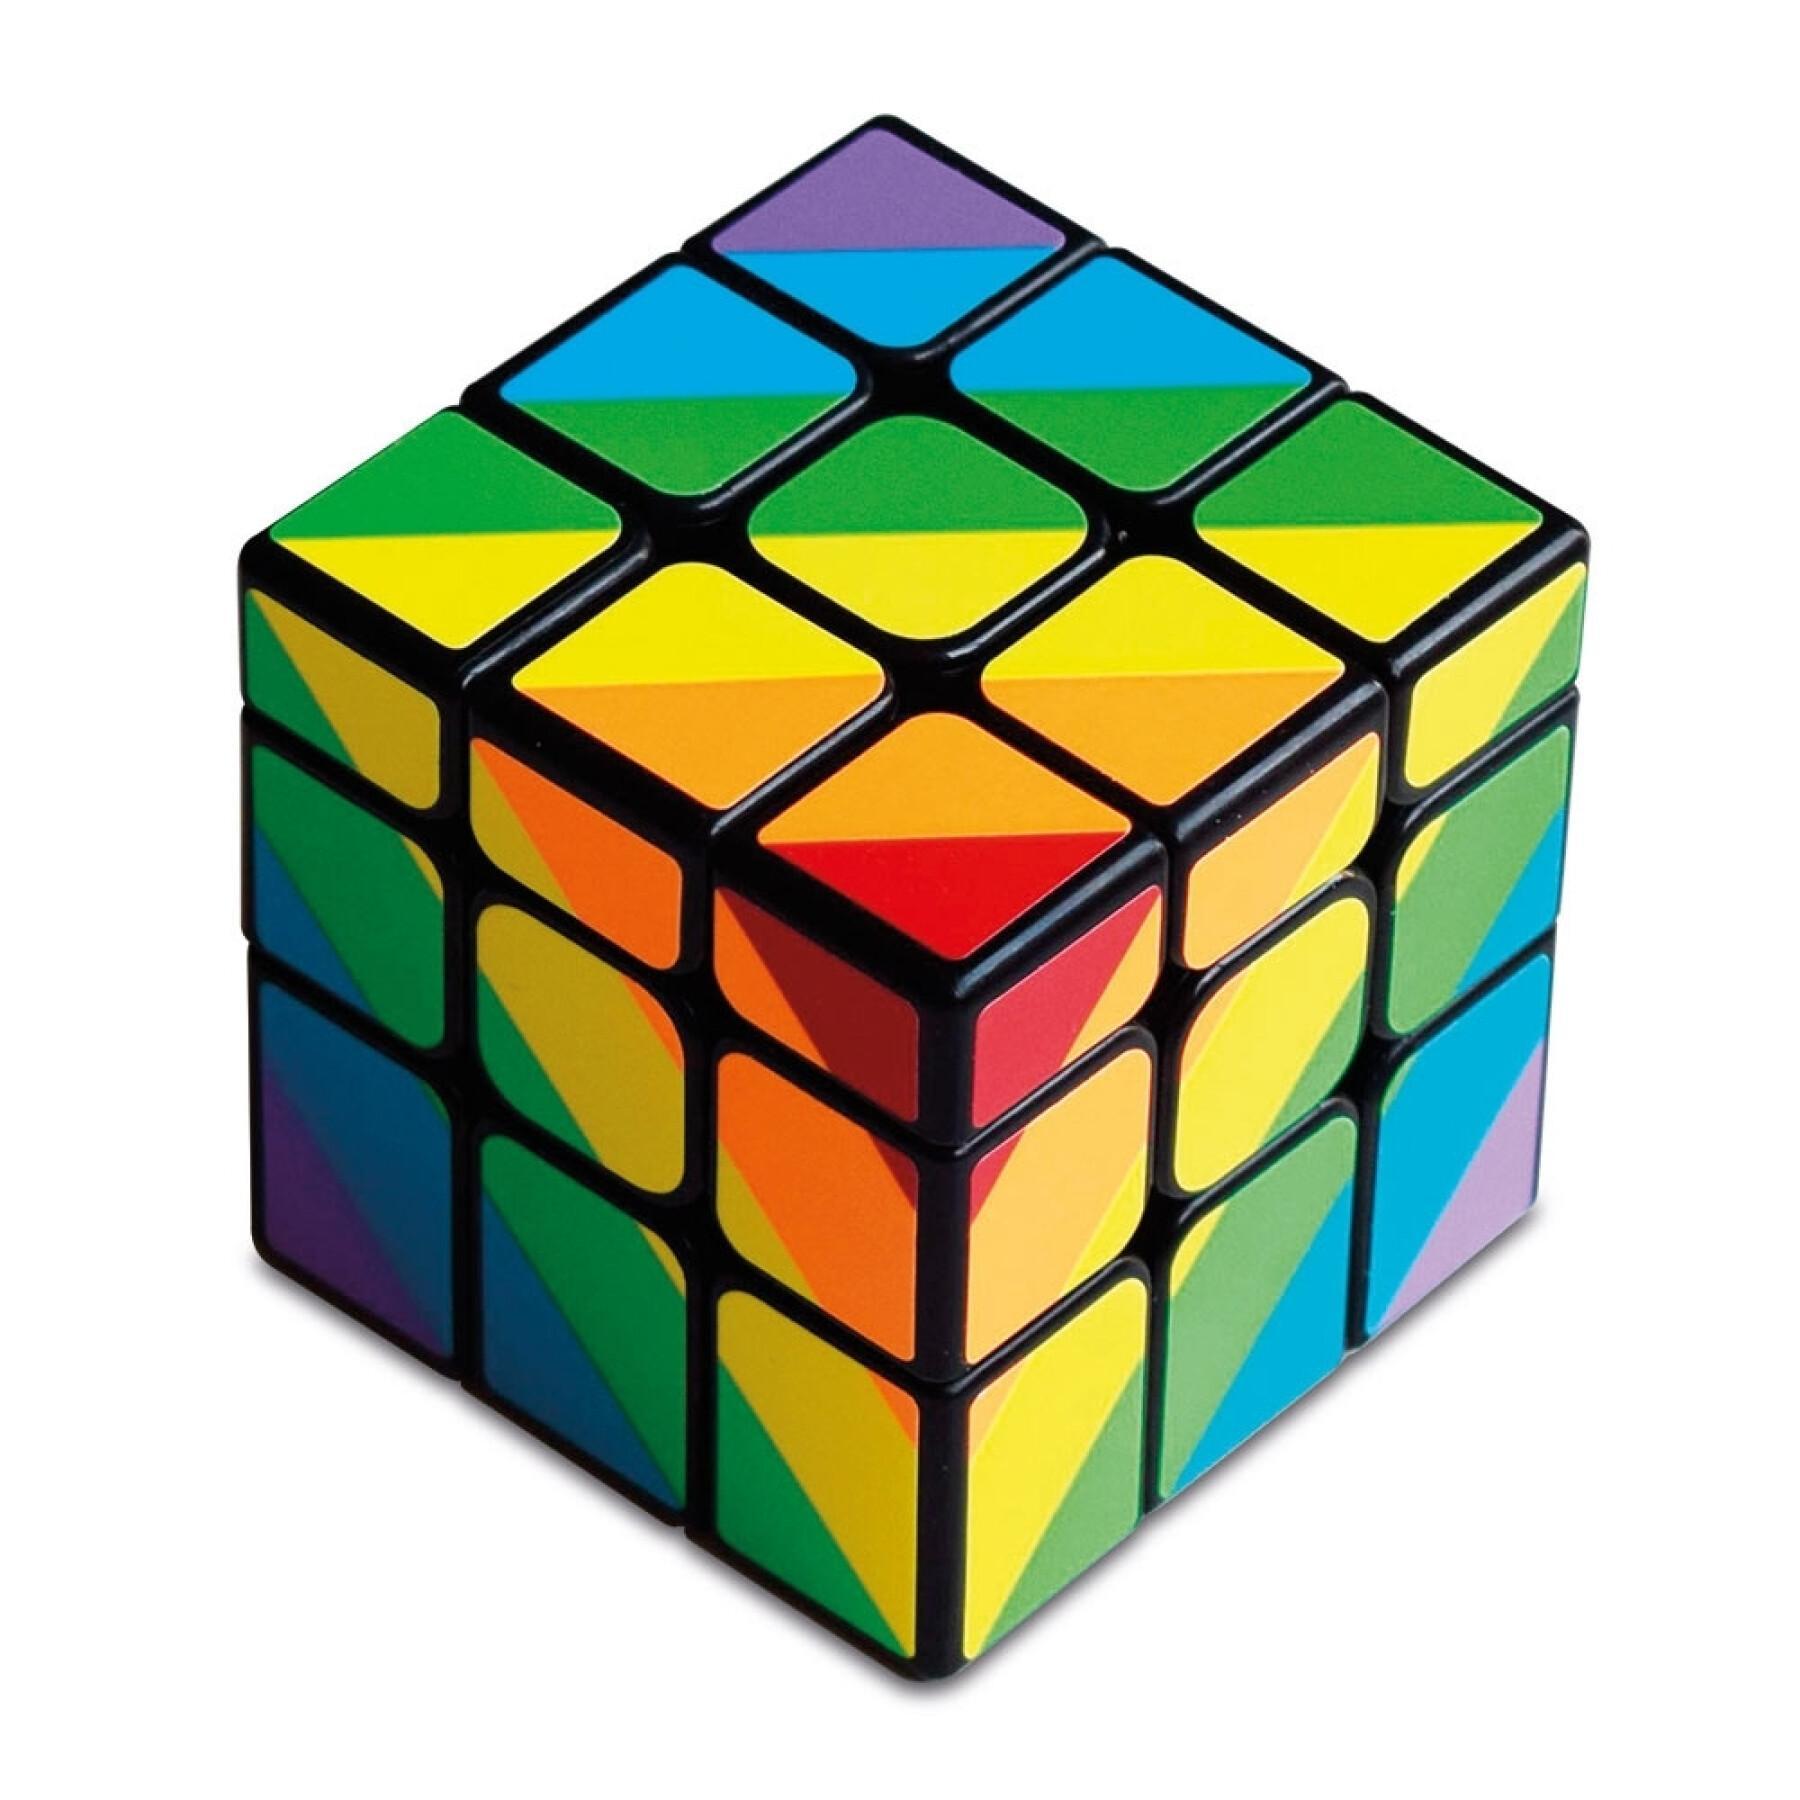 Cube magique Cayro Unequal